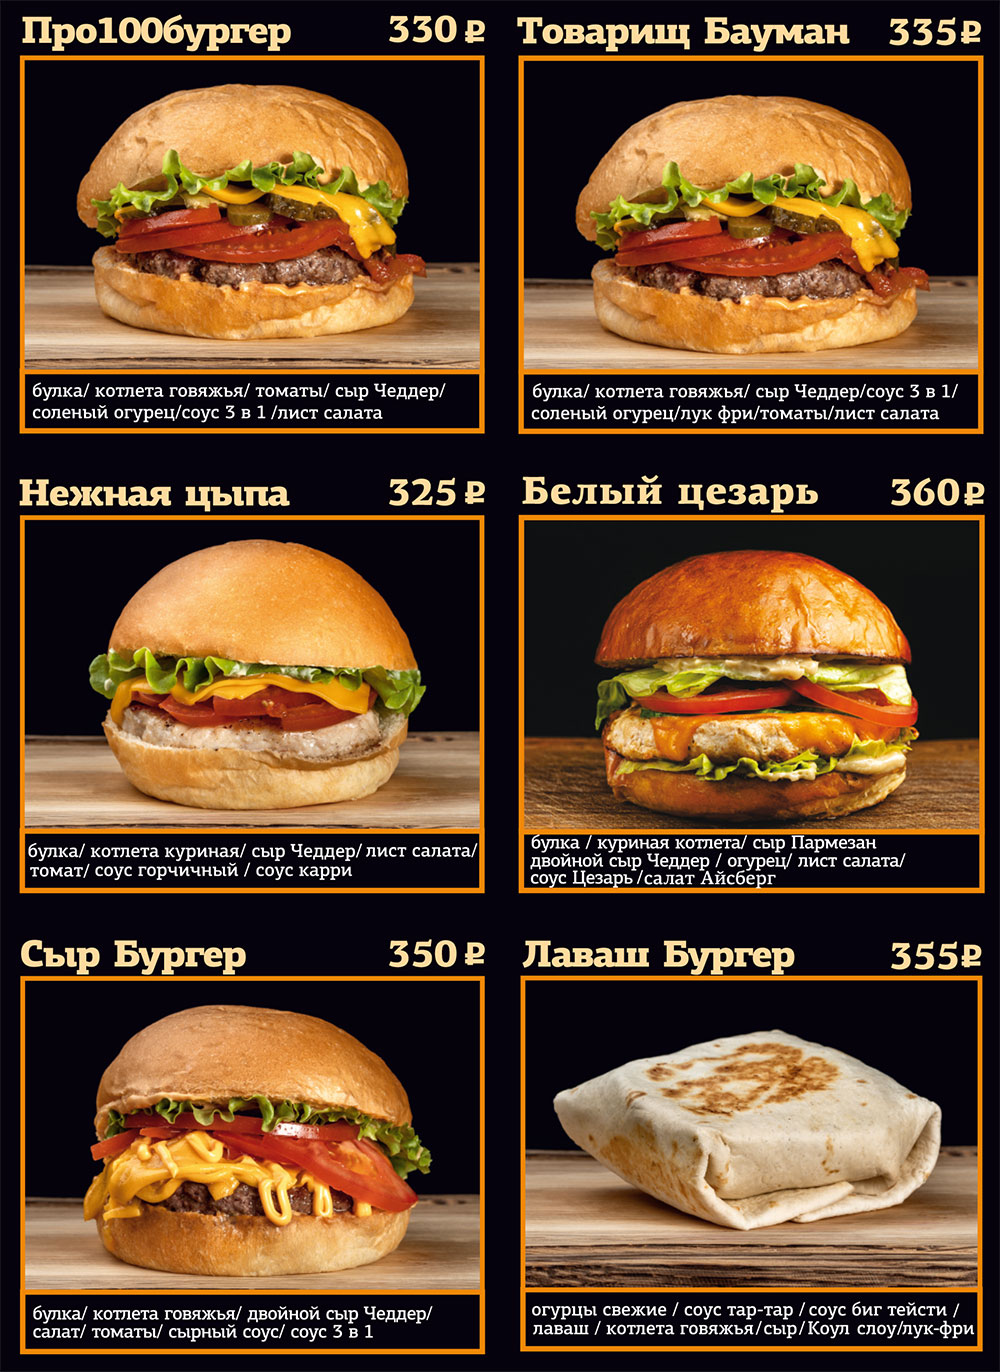 burger18 2